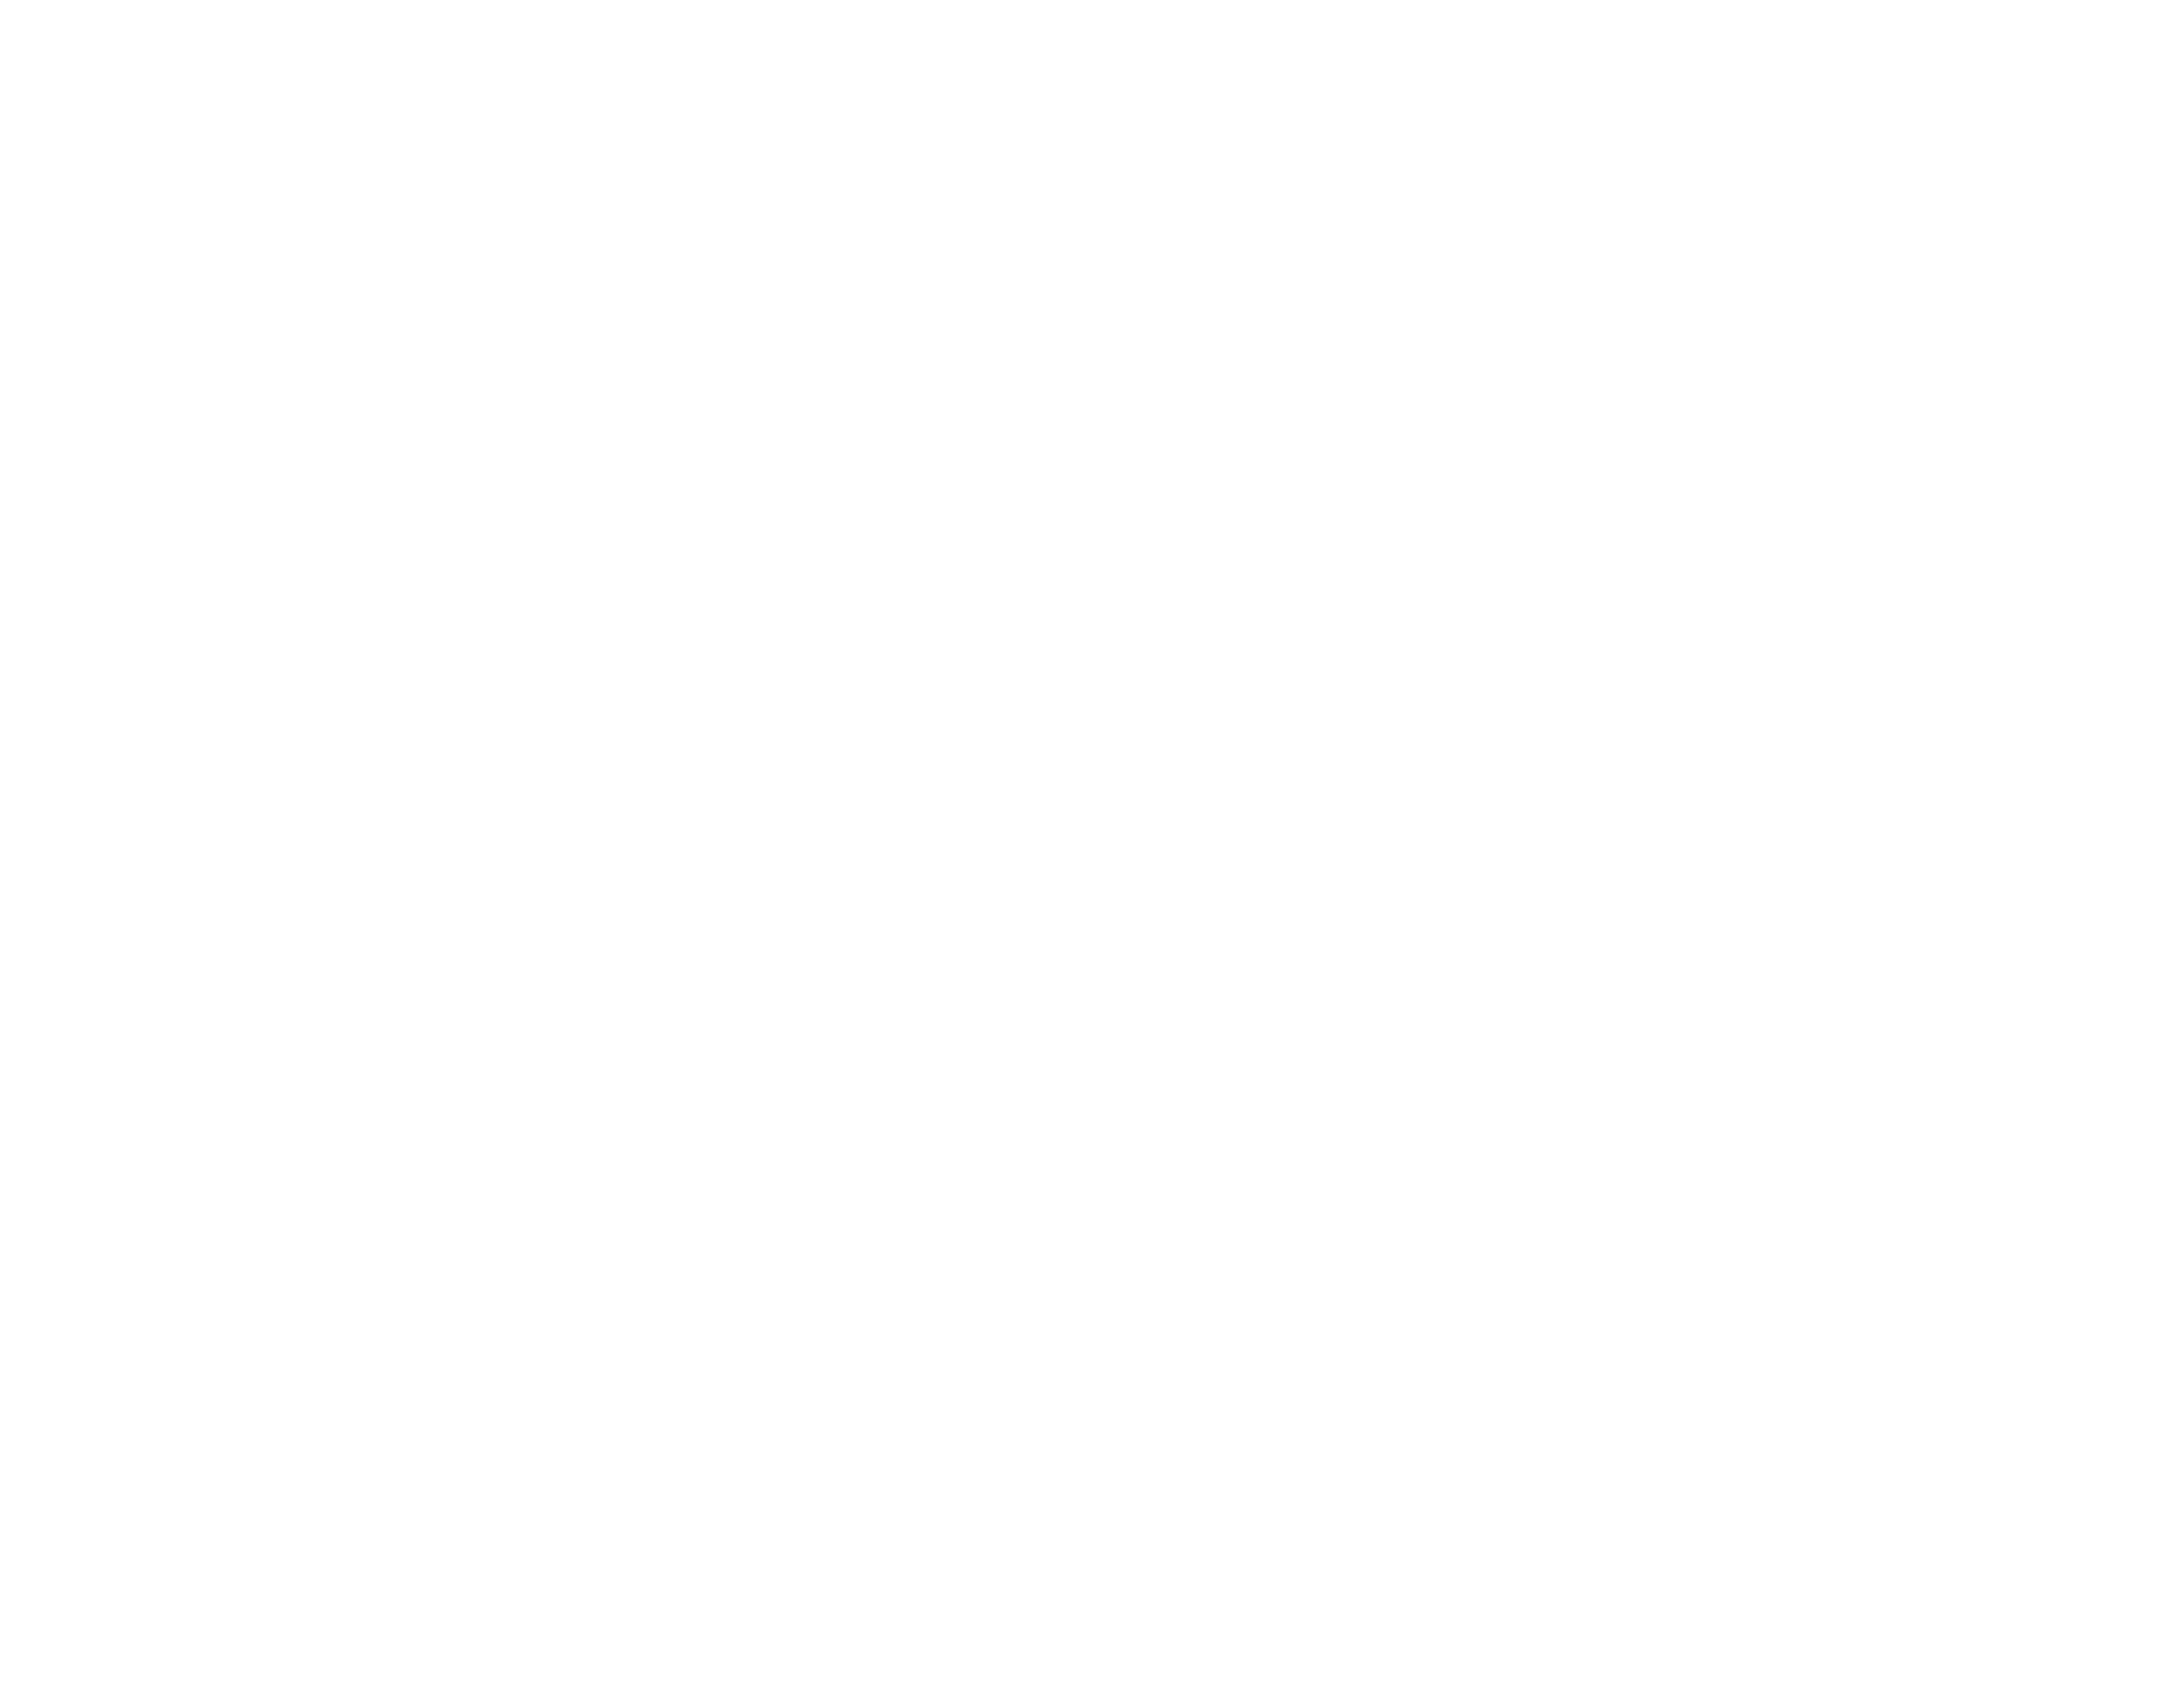 Avatar - Women's Tennis Association